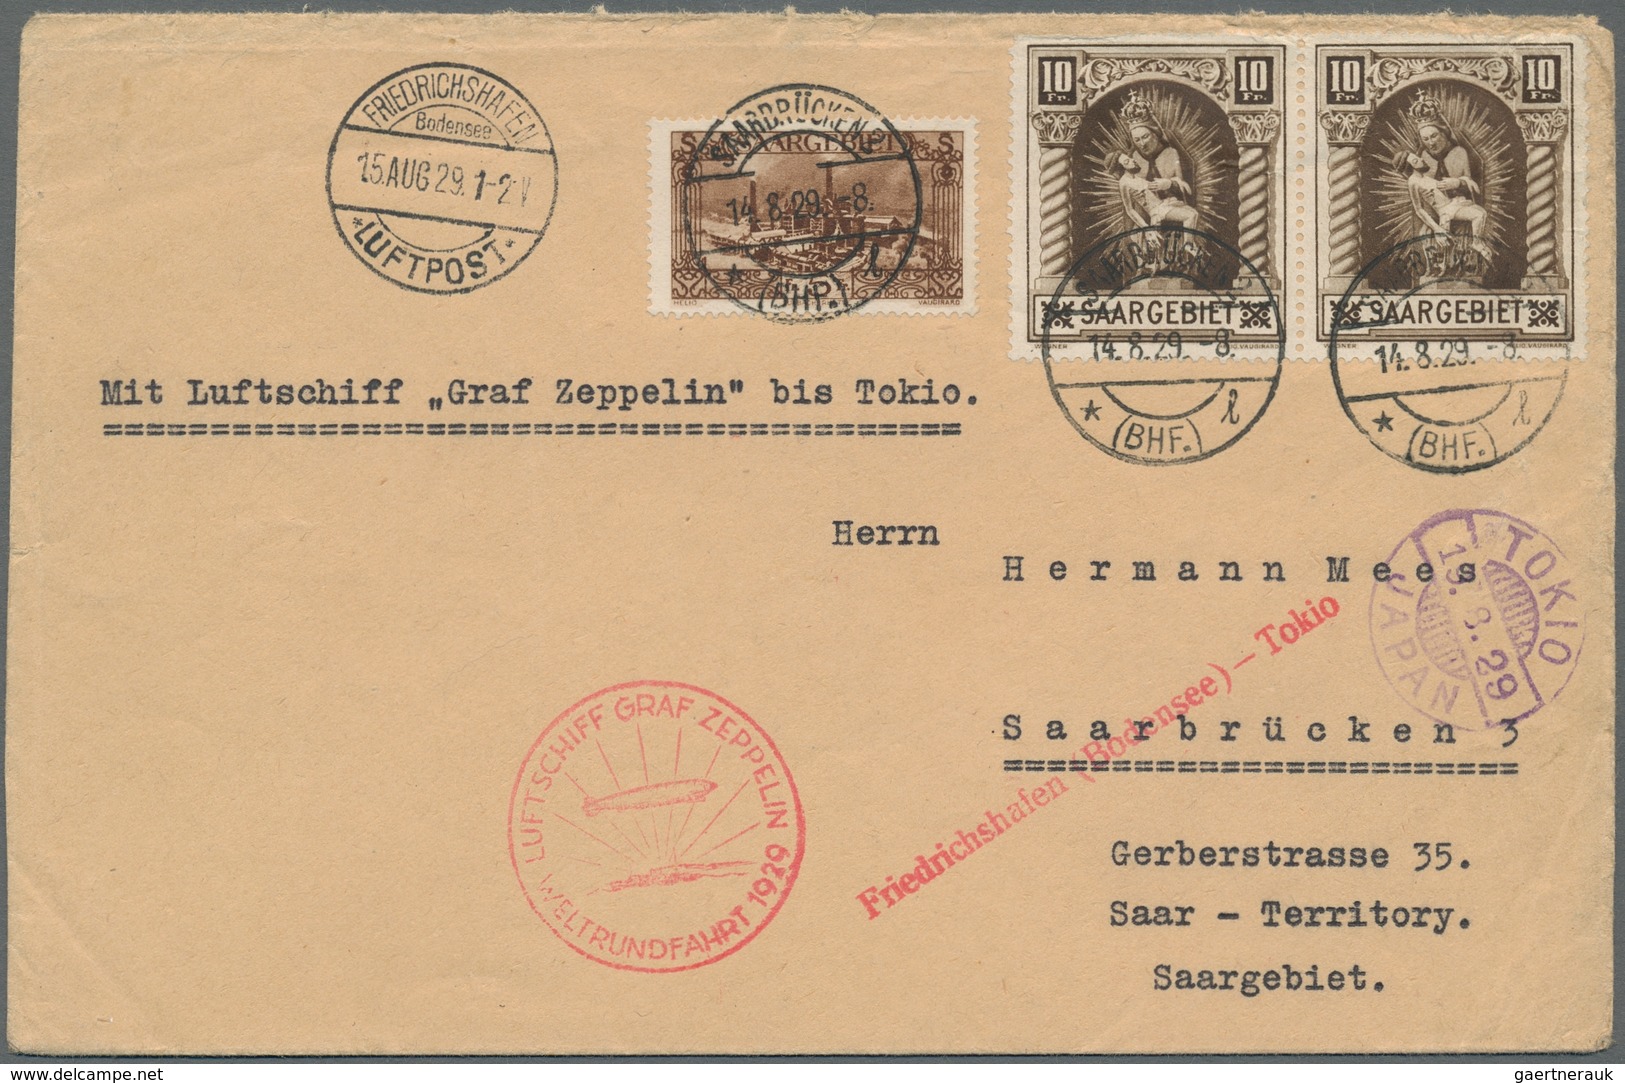 Zeppelinpost Deutschland: 1929 - Weltrundfahrt, Zuleitung Saar Auf Hochwertig Frankiertem Flugbrief - Airmail & Zeppelin